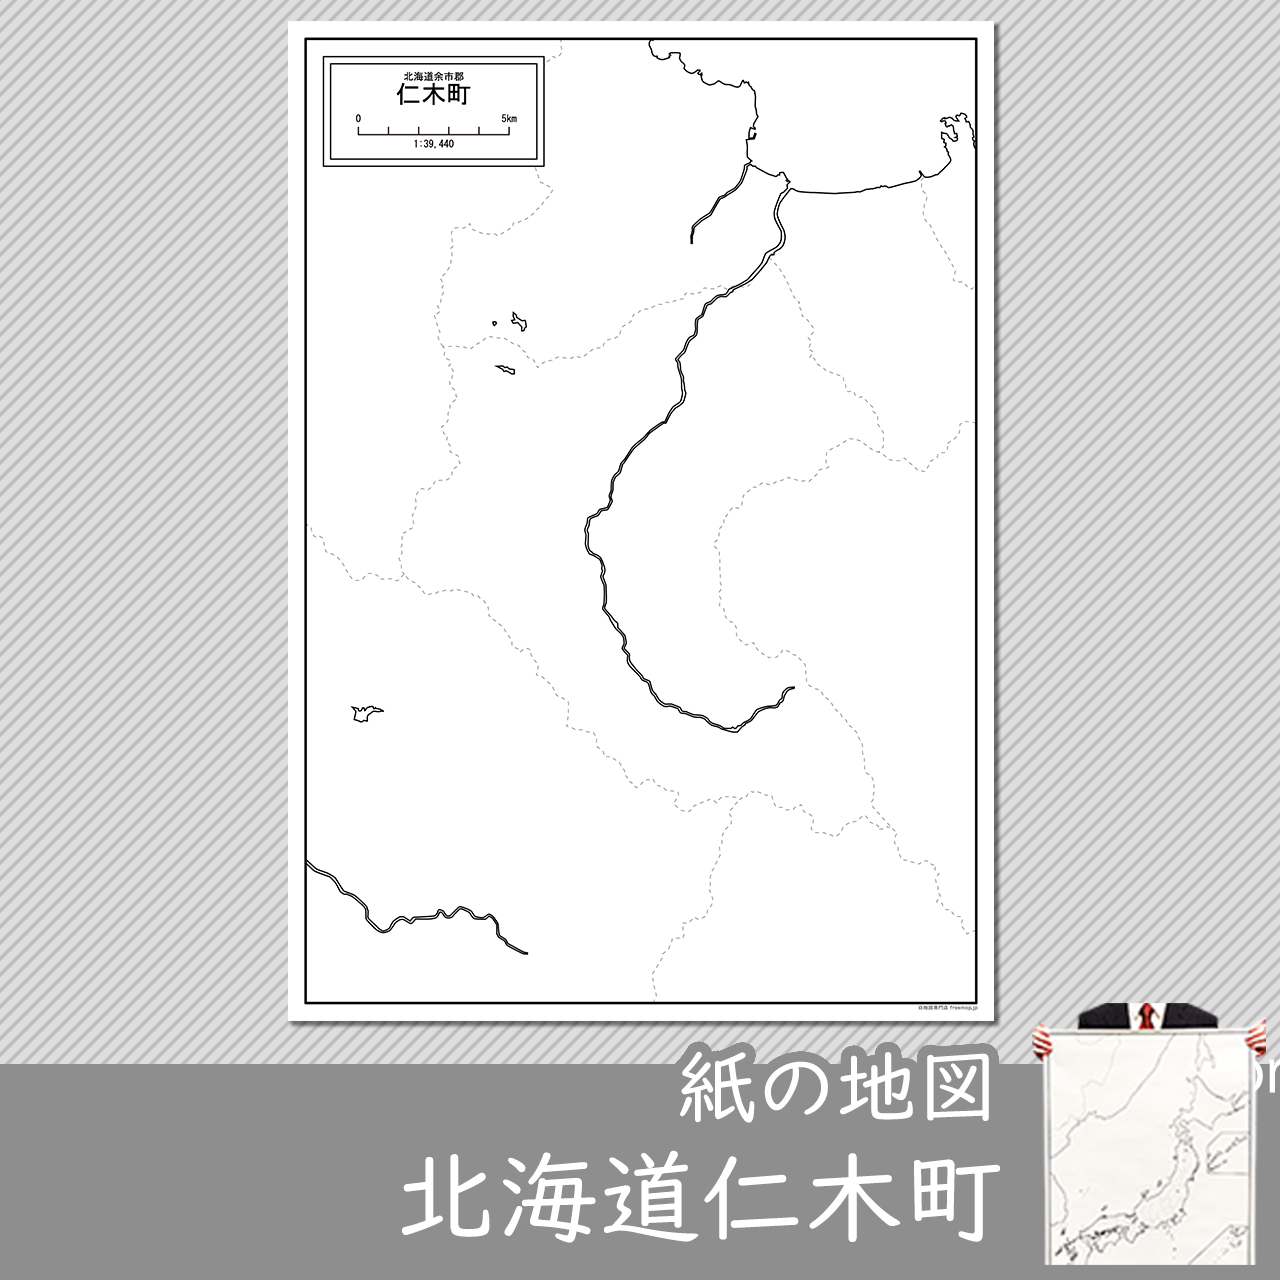 仁木町の紙の白地図のサムネイル